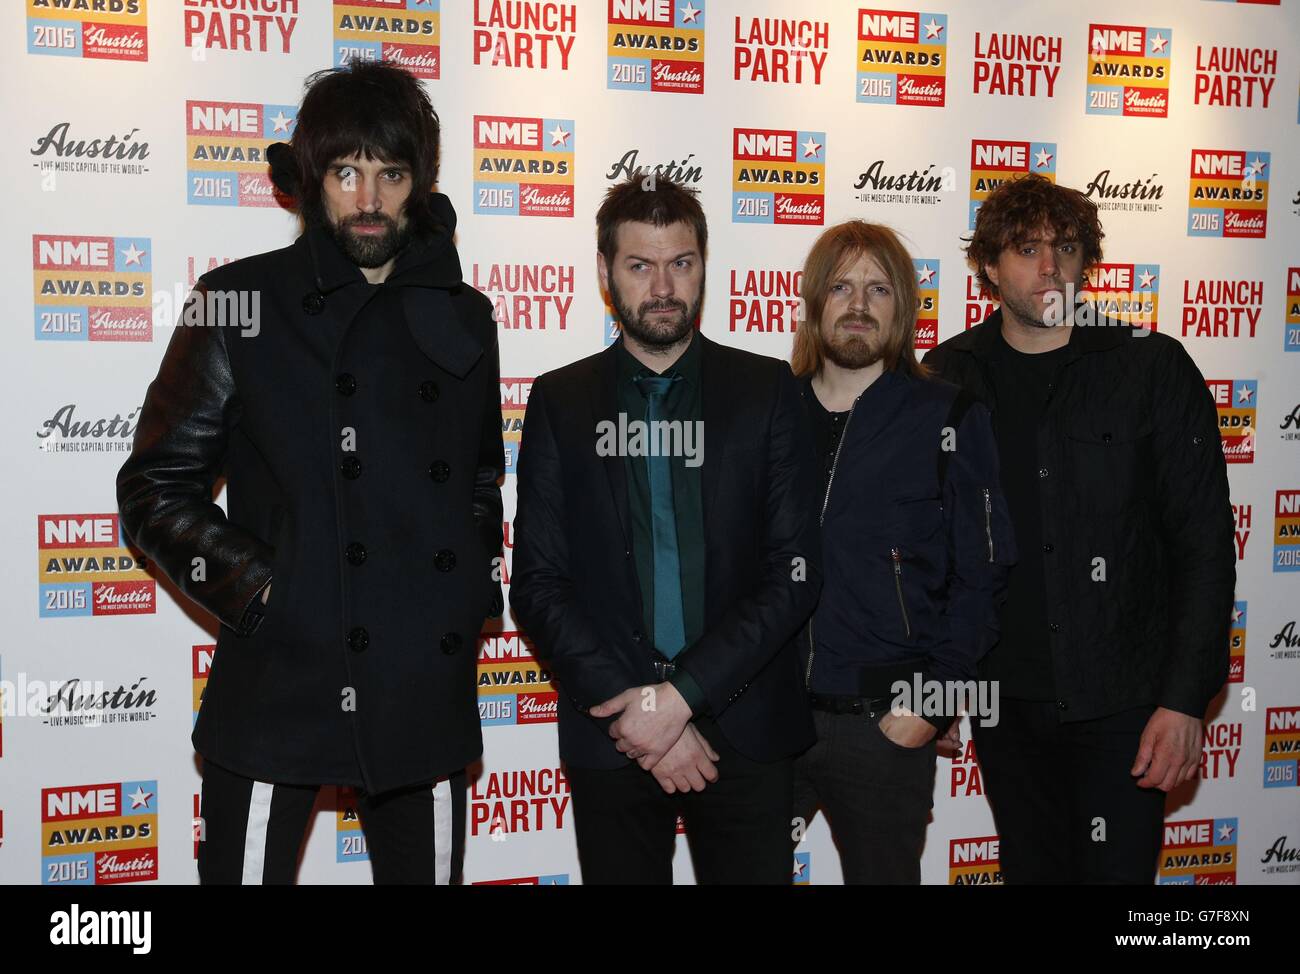 Kasabian asistió a la fiesta de lanzamiento de los NME Awards 2015, celebrada en Under the Bridge, Chelsea, Londres. Foto de stock